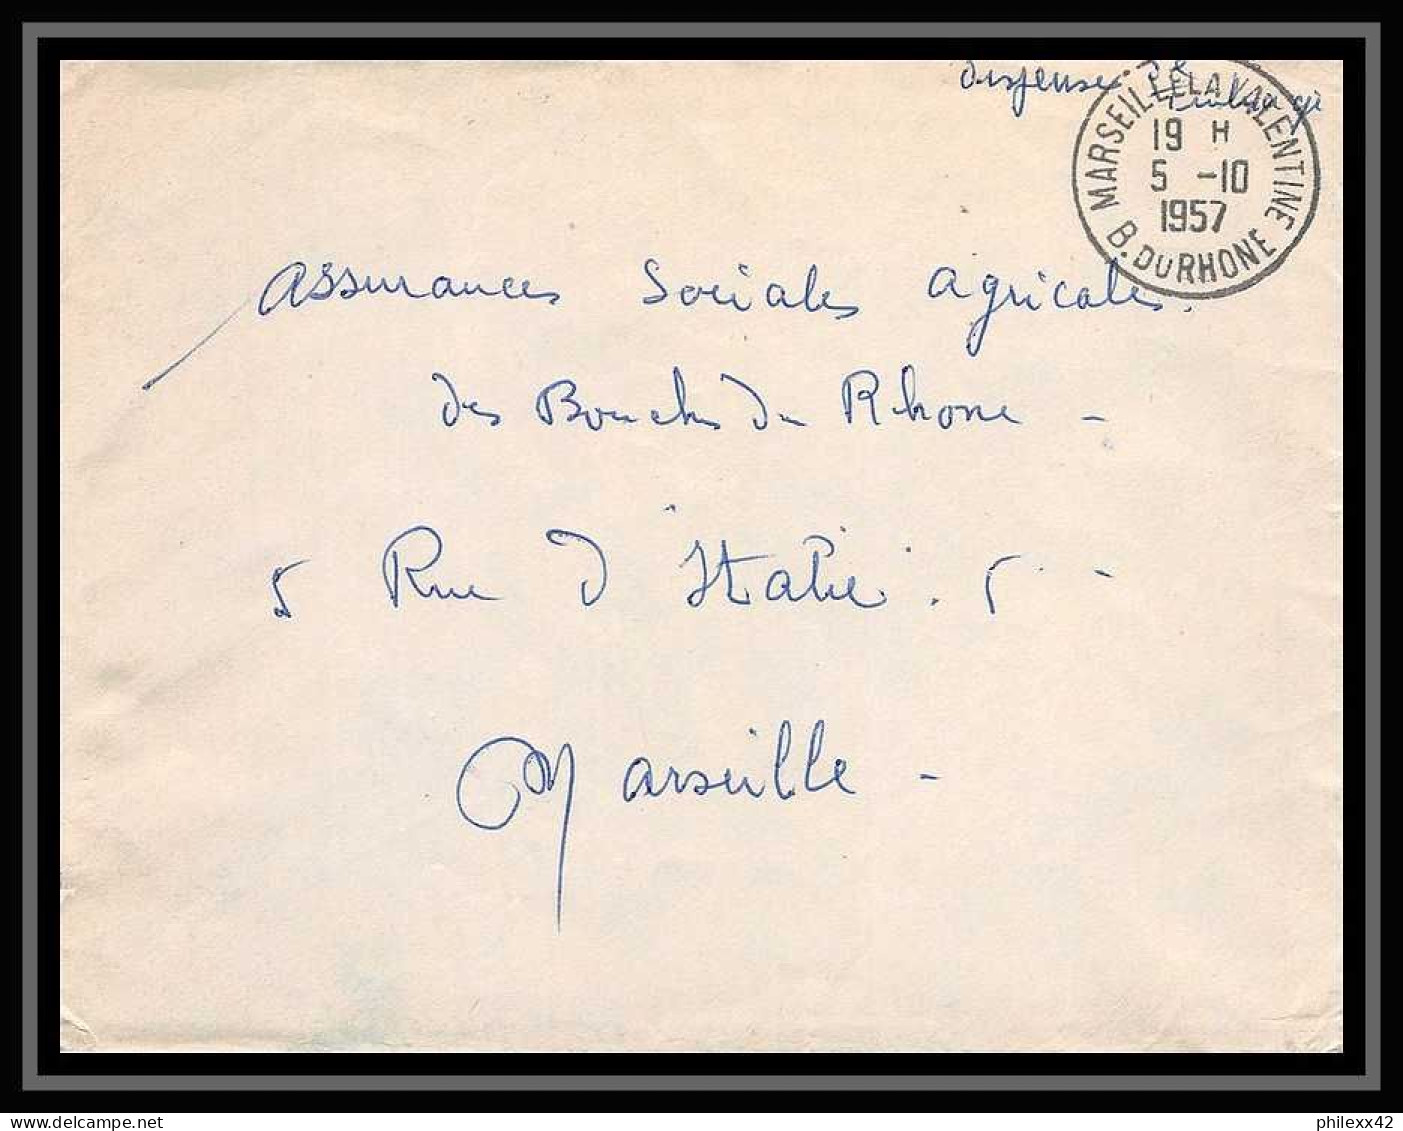 107173 lot de 10 Lettres cover guerre 1914 -1918 Bouches du rhone Marseille